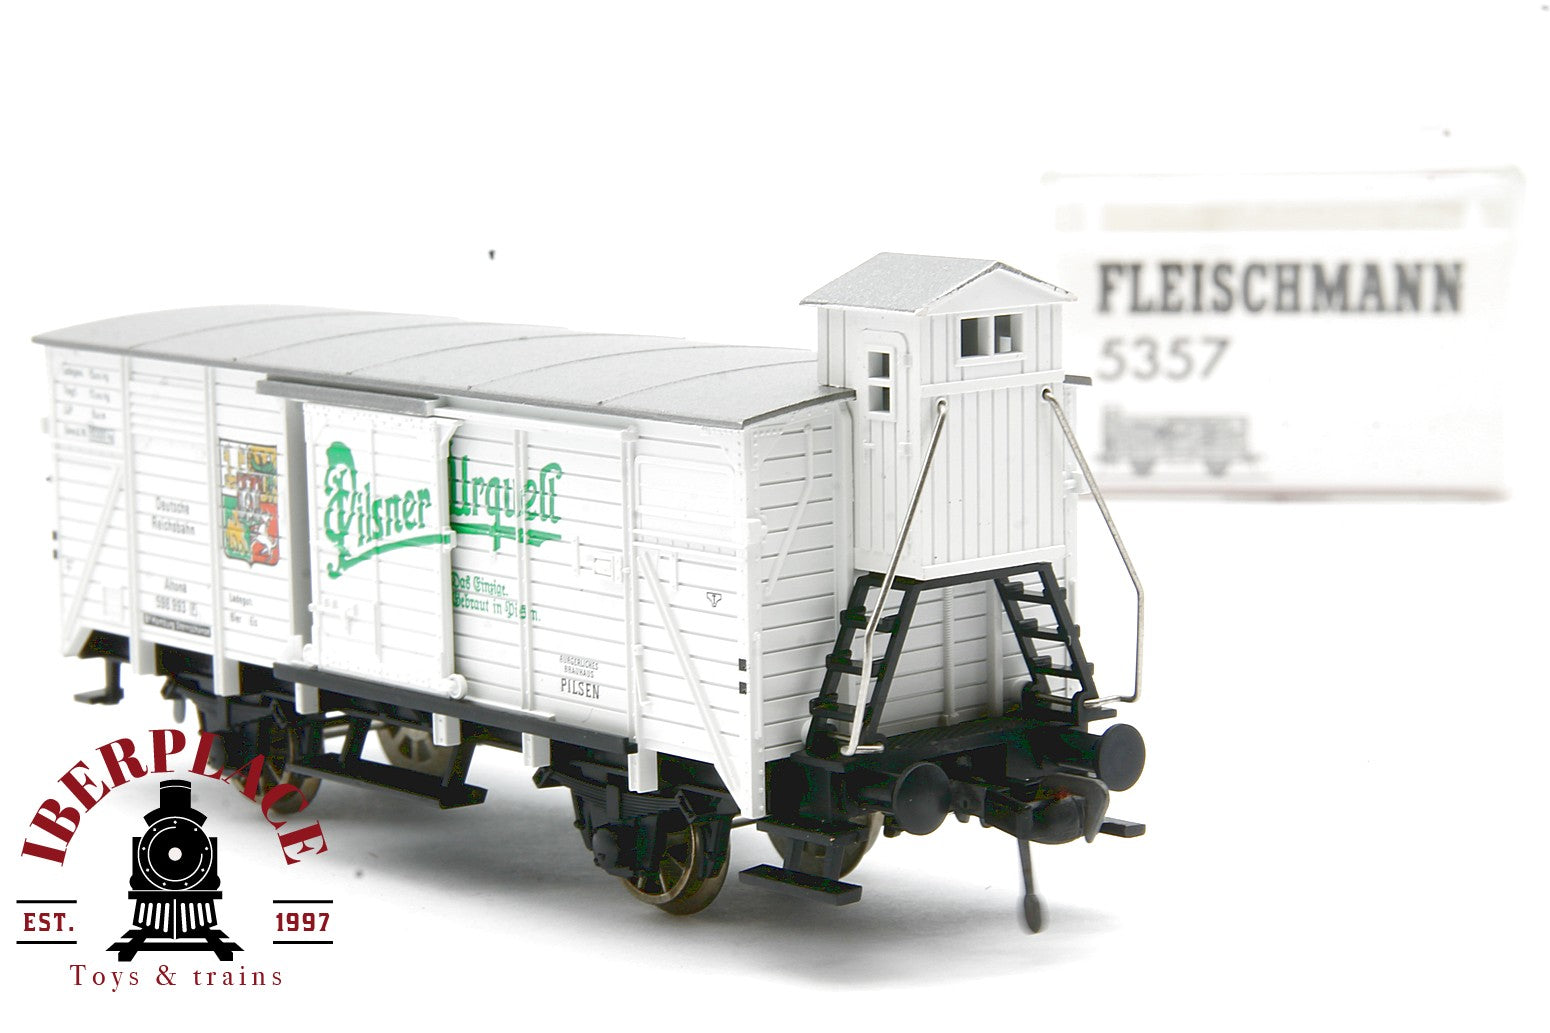 Fleischmann 5357 vagón mercancías Pilsner DR 598 993 H0 1:87 ho 00